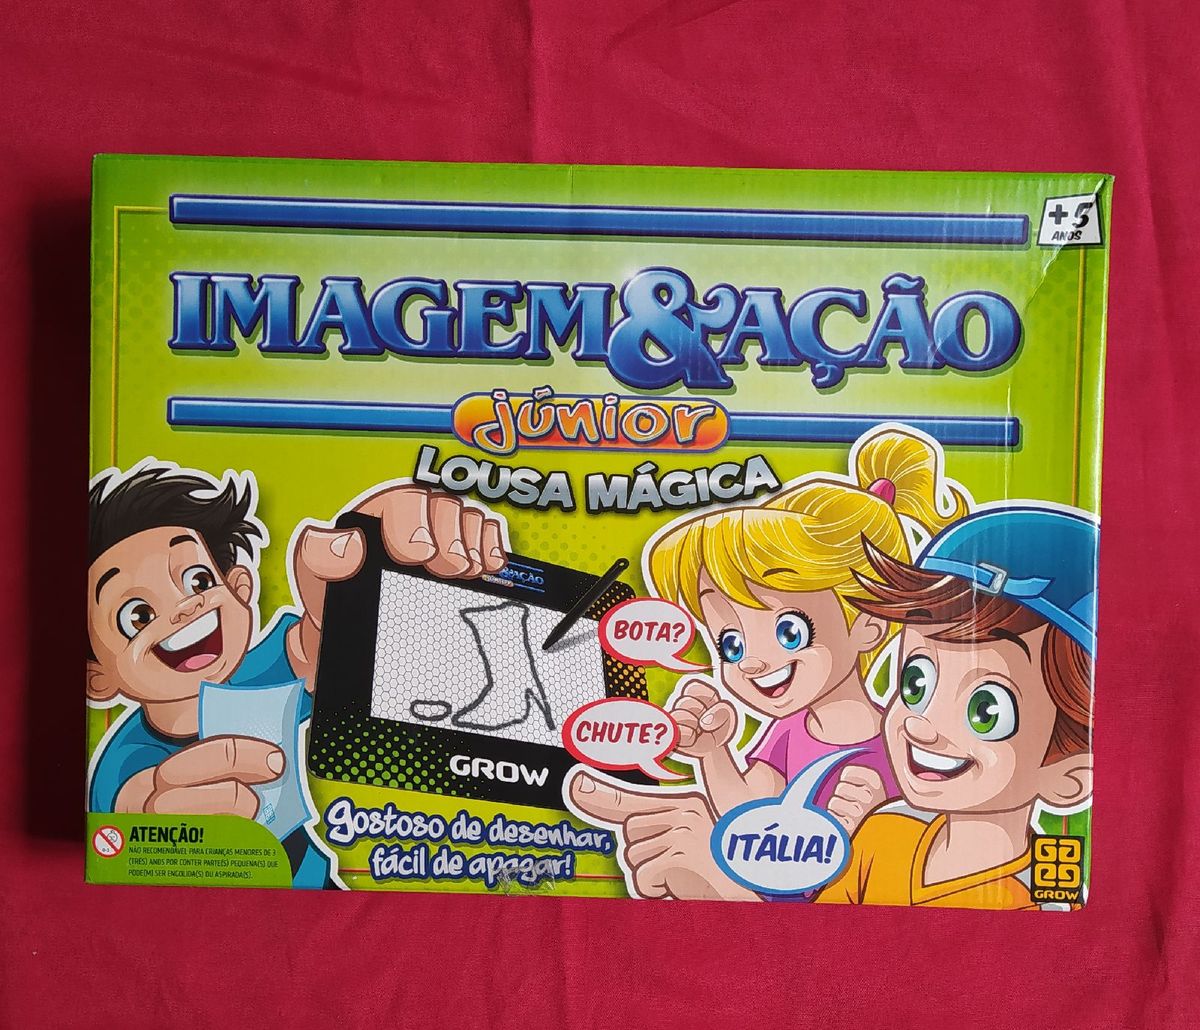 Jogo de tabuleiro Infantil Imagem E Ação Júnior Lousa Mágica - Grow 5 Anos  + Diversão para a familia toda!